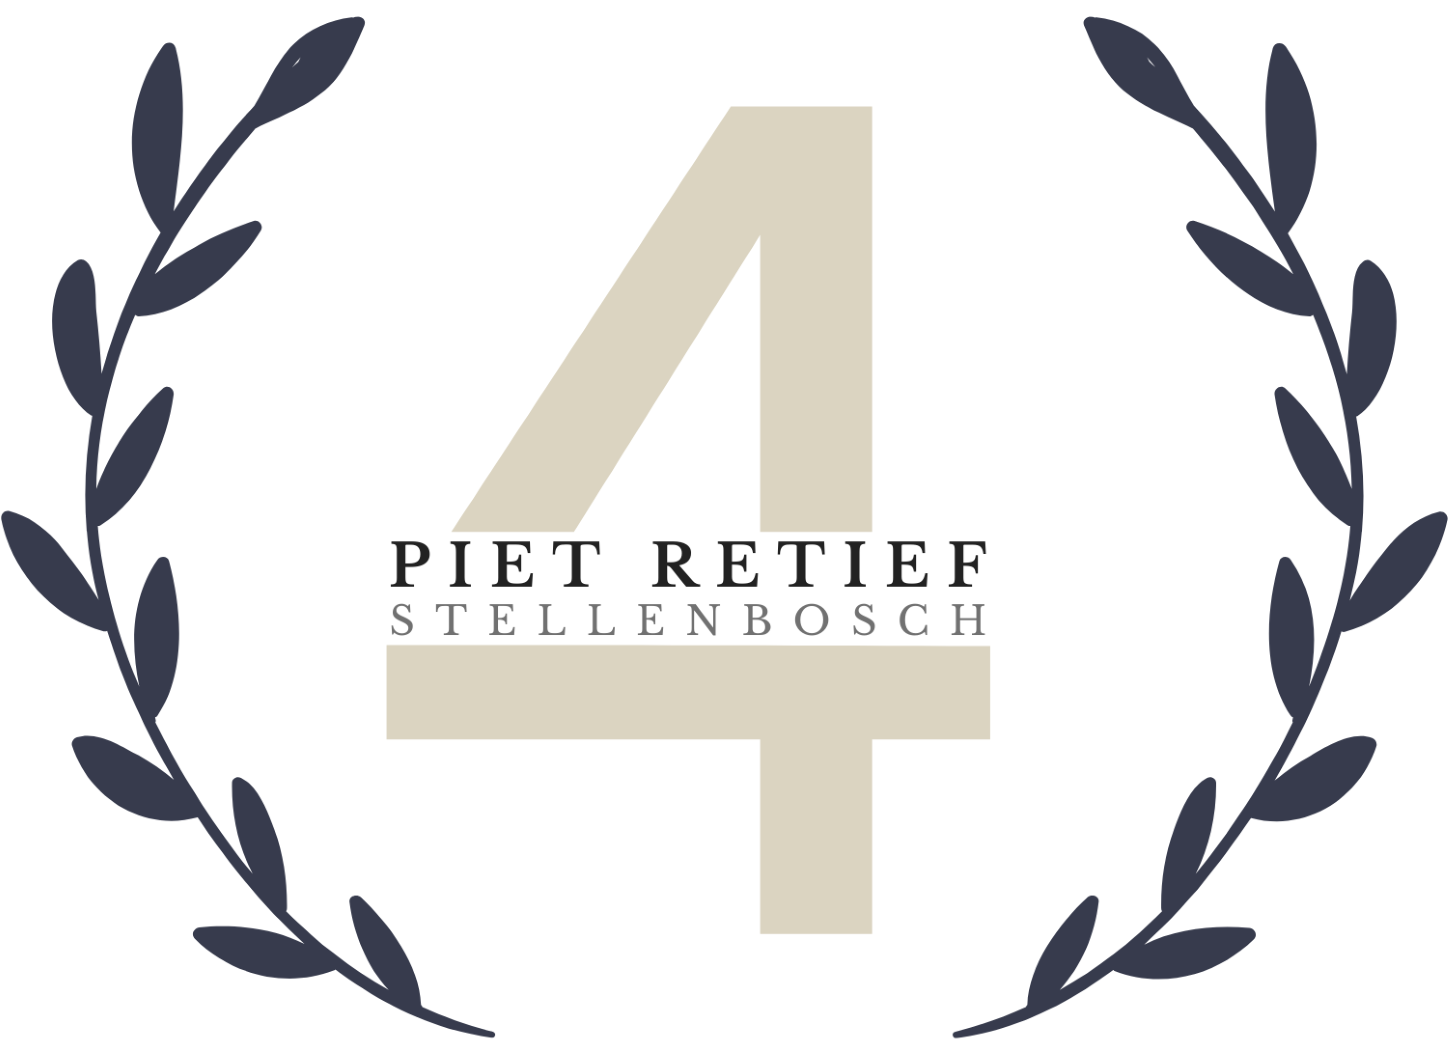 4 Piet Retief